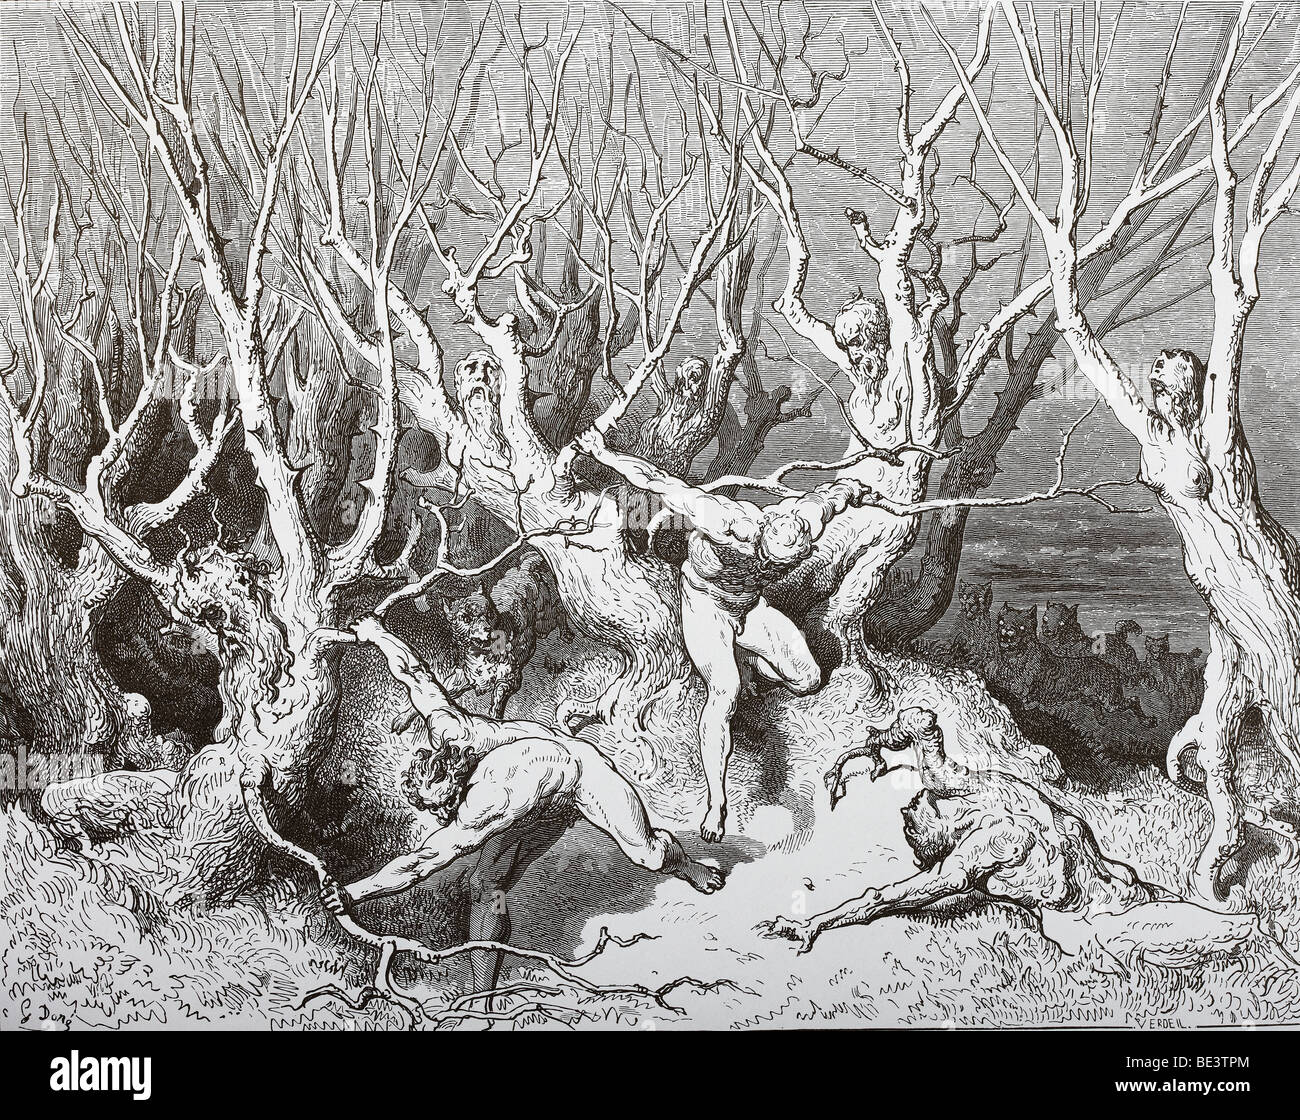 File:Gustave Doré - Dante Alighieri - Inferno - Plate 8 (Canto III